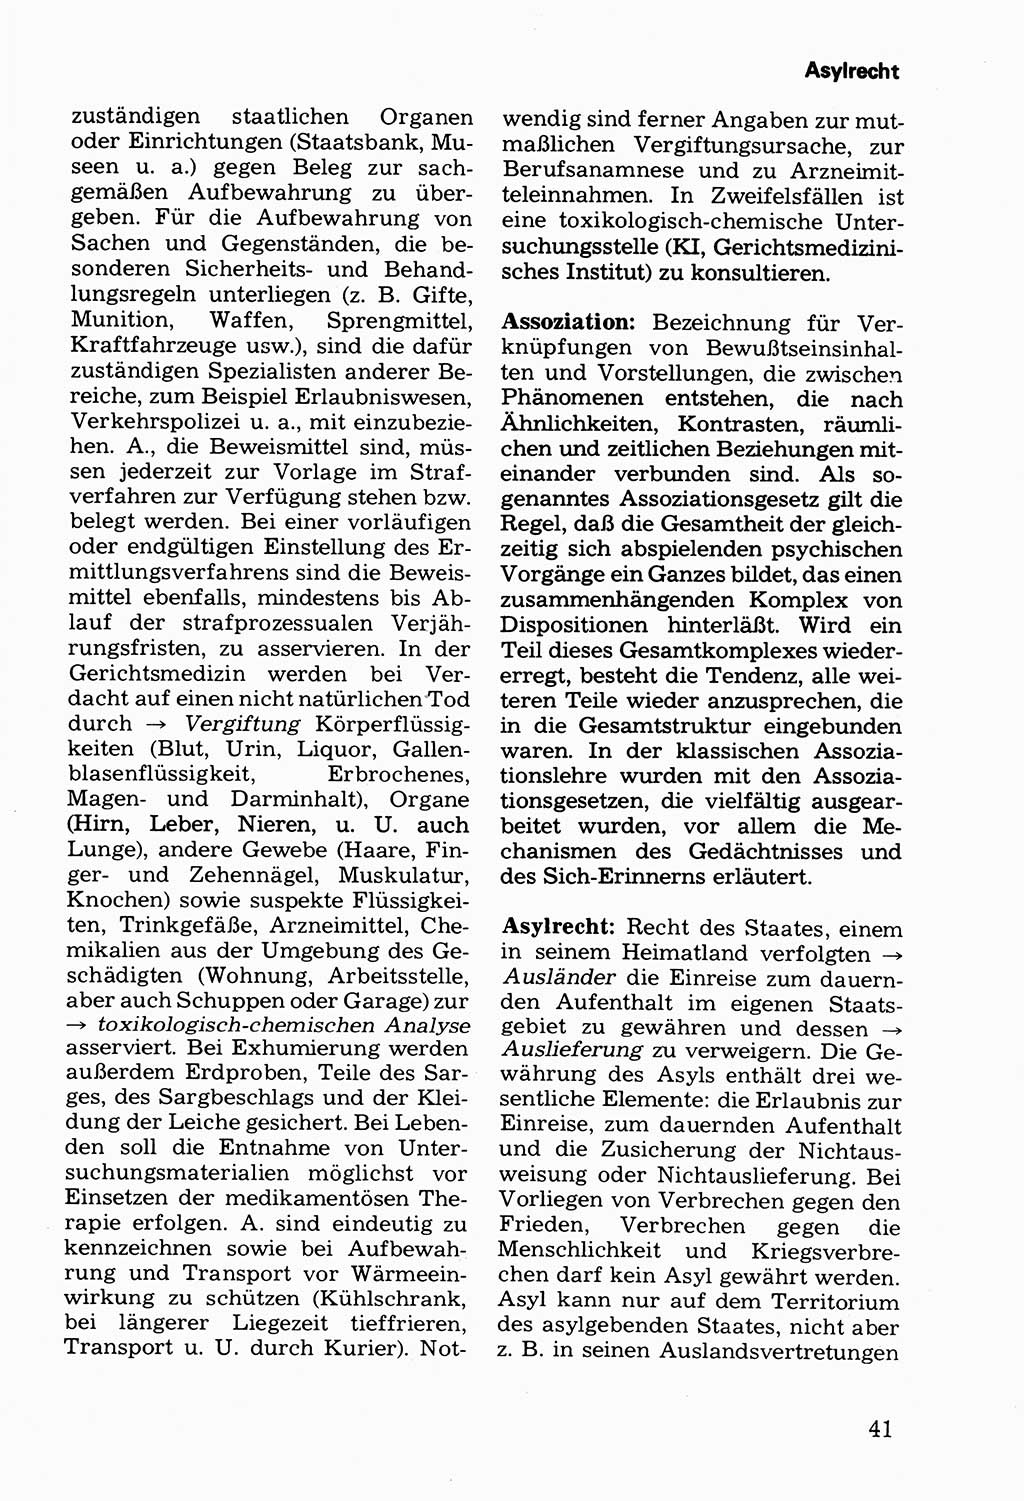 Wörterbuch der sozialistischen Kriminalistik [Deutsche Demokratische Republik (DDR)] 1981, Seite 41 (Wb. soz. Krim. DDR 1981, S. 41)